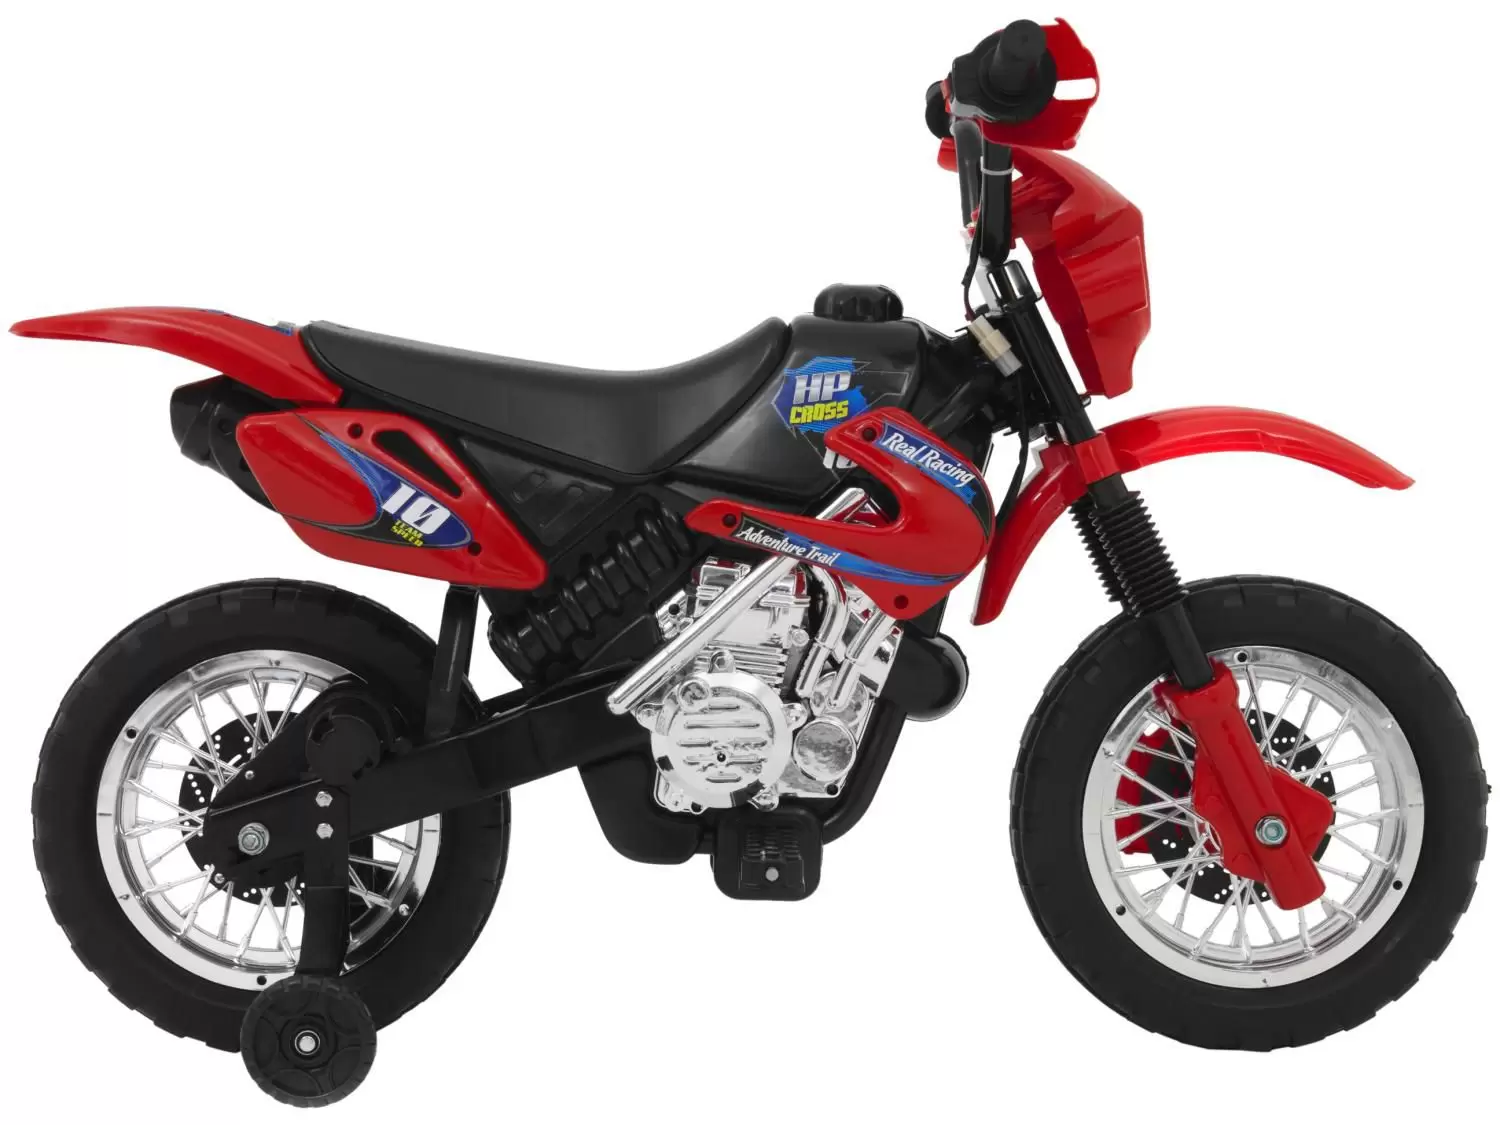 Moto de Motocross de Brinquedo com Apoio - Vermelho